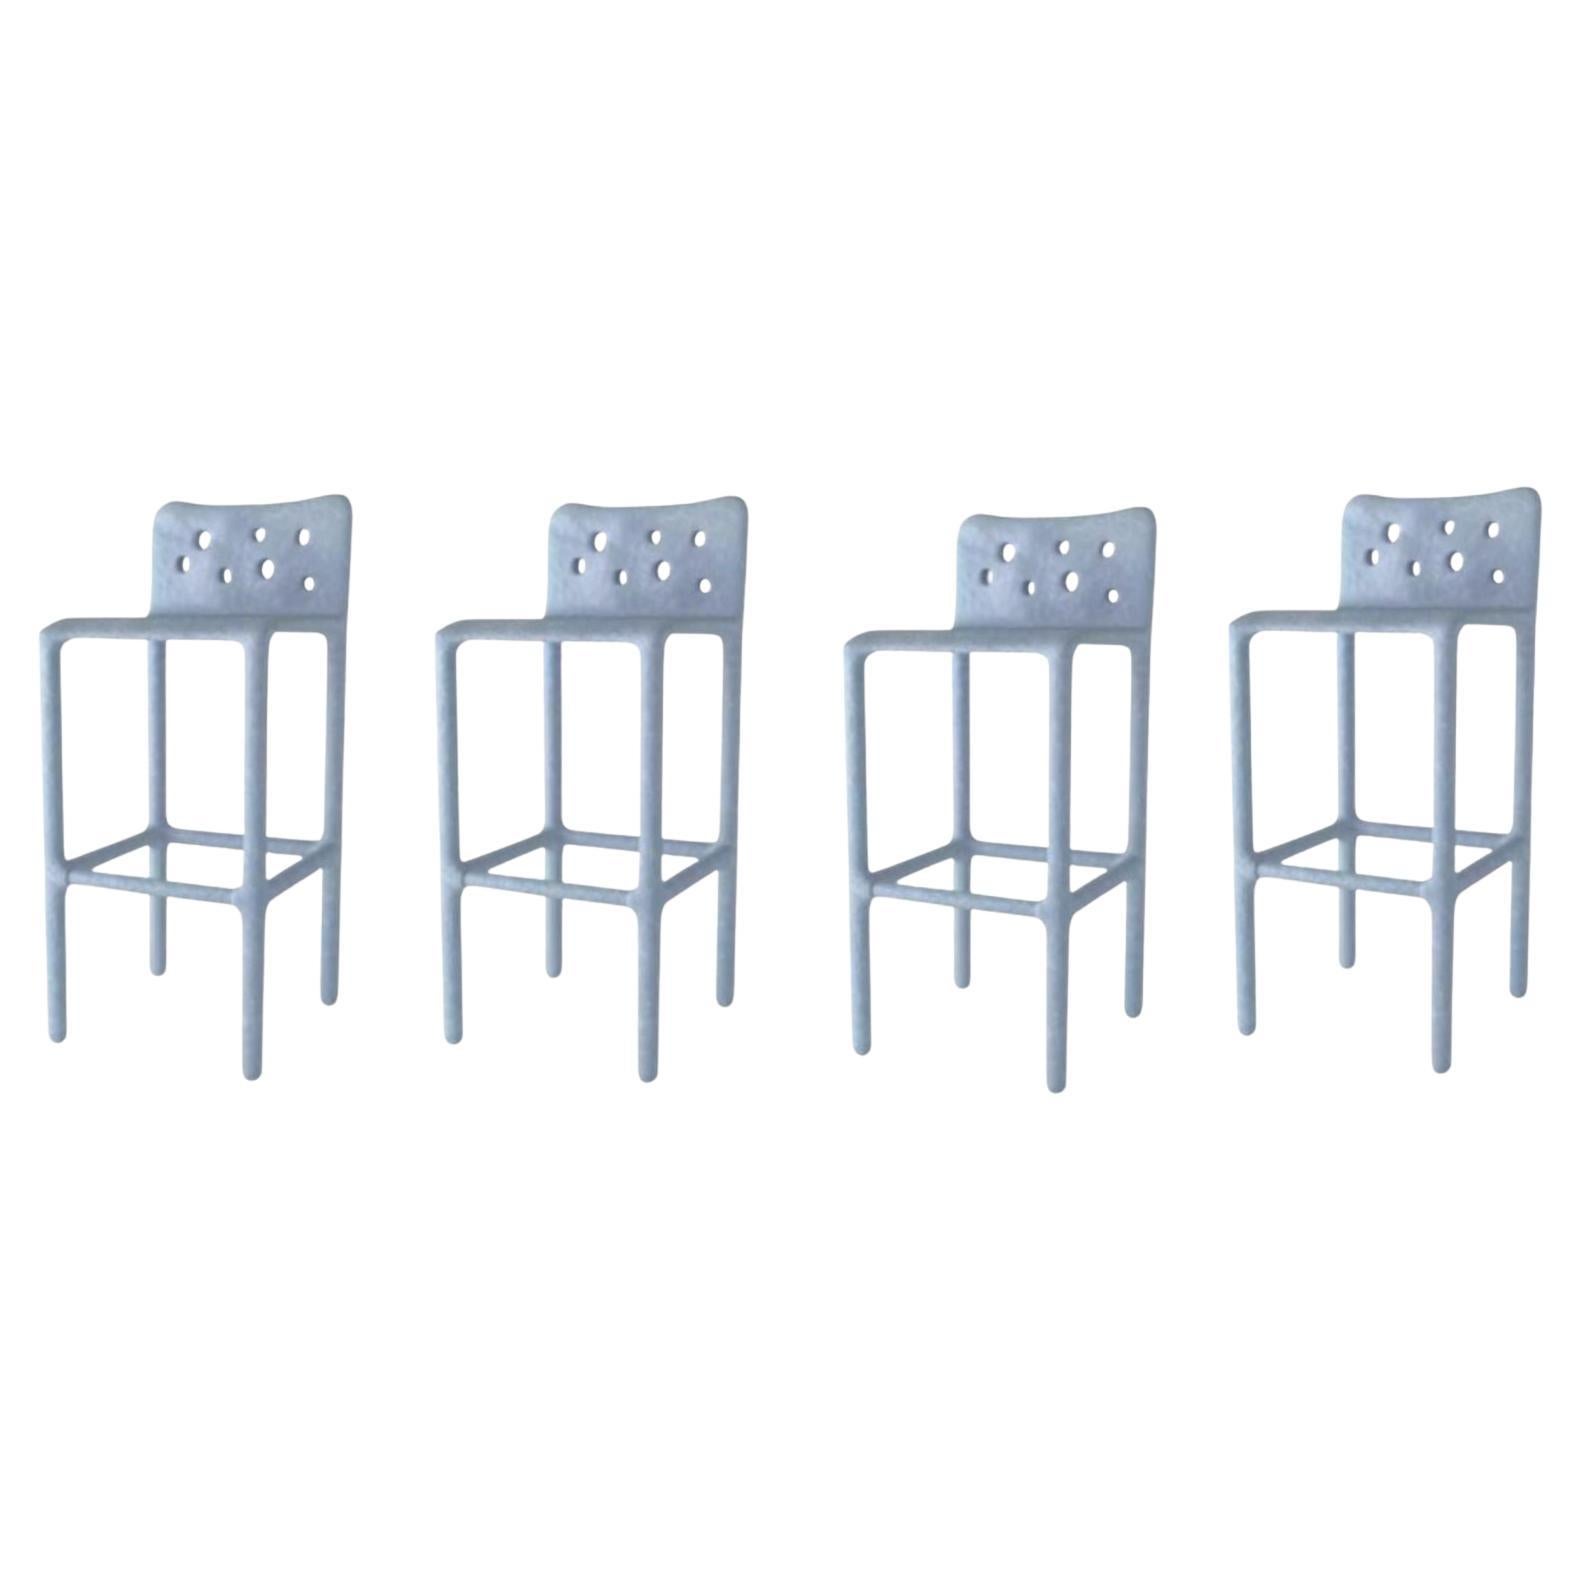 Satz von 4 Himmelblau geformten zeitgenössischen Stühlen von FAINA